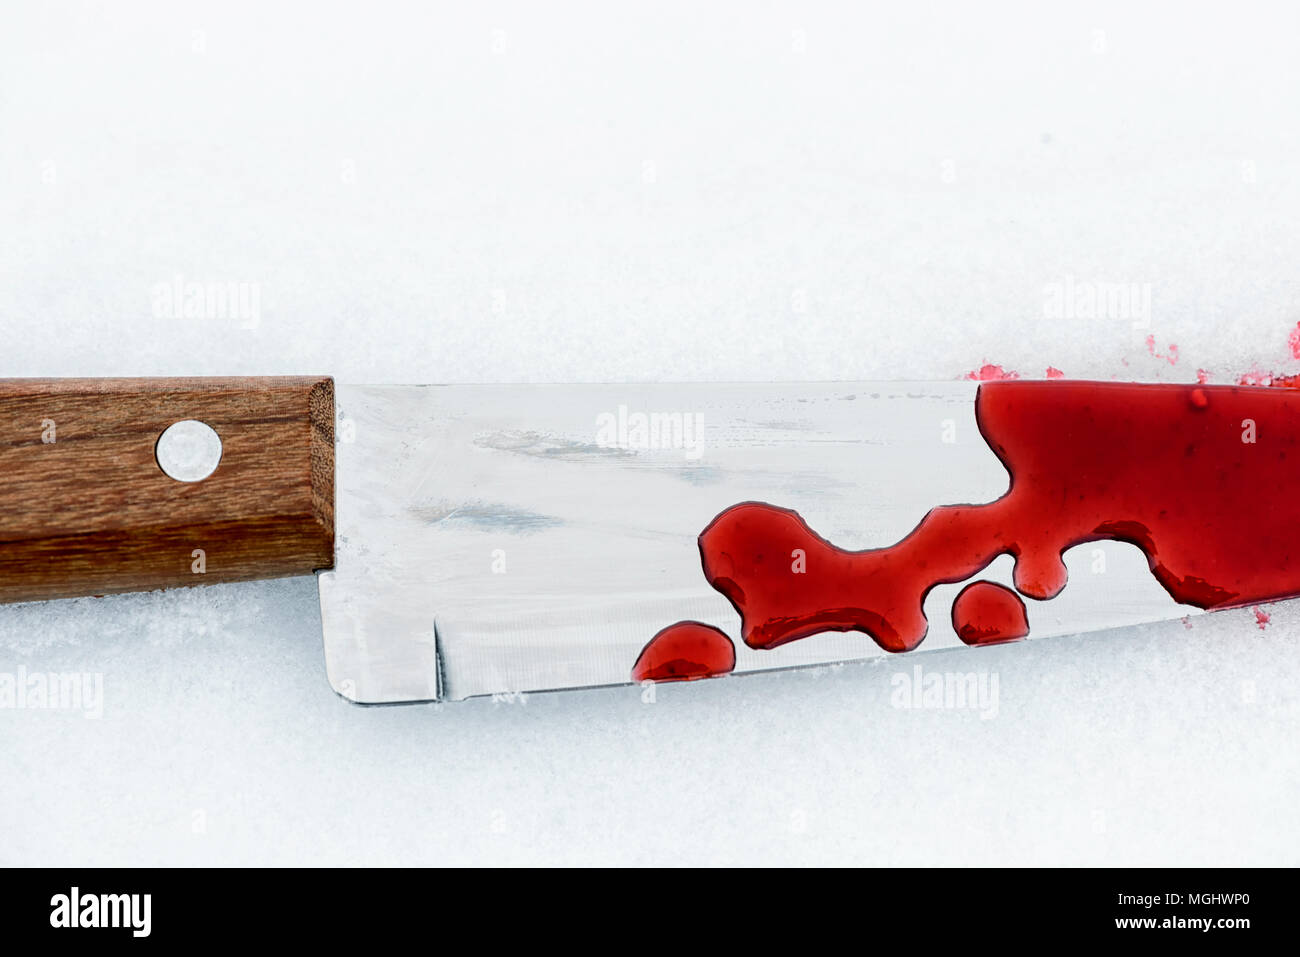 Scharfe metall Messer Kante verwendet als heftiger Mordwaffe mit Blut Tropfen auf einem weißen Schnee Hintergrund. Blade abgedeckt, die Gewalt mit Kopie Raum Stockfoto